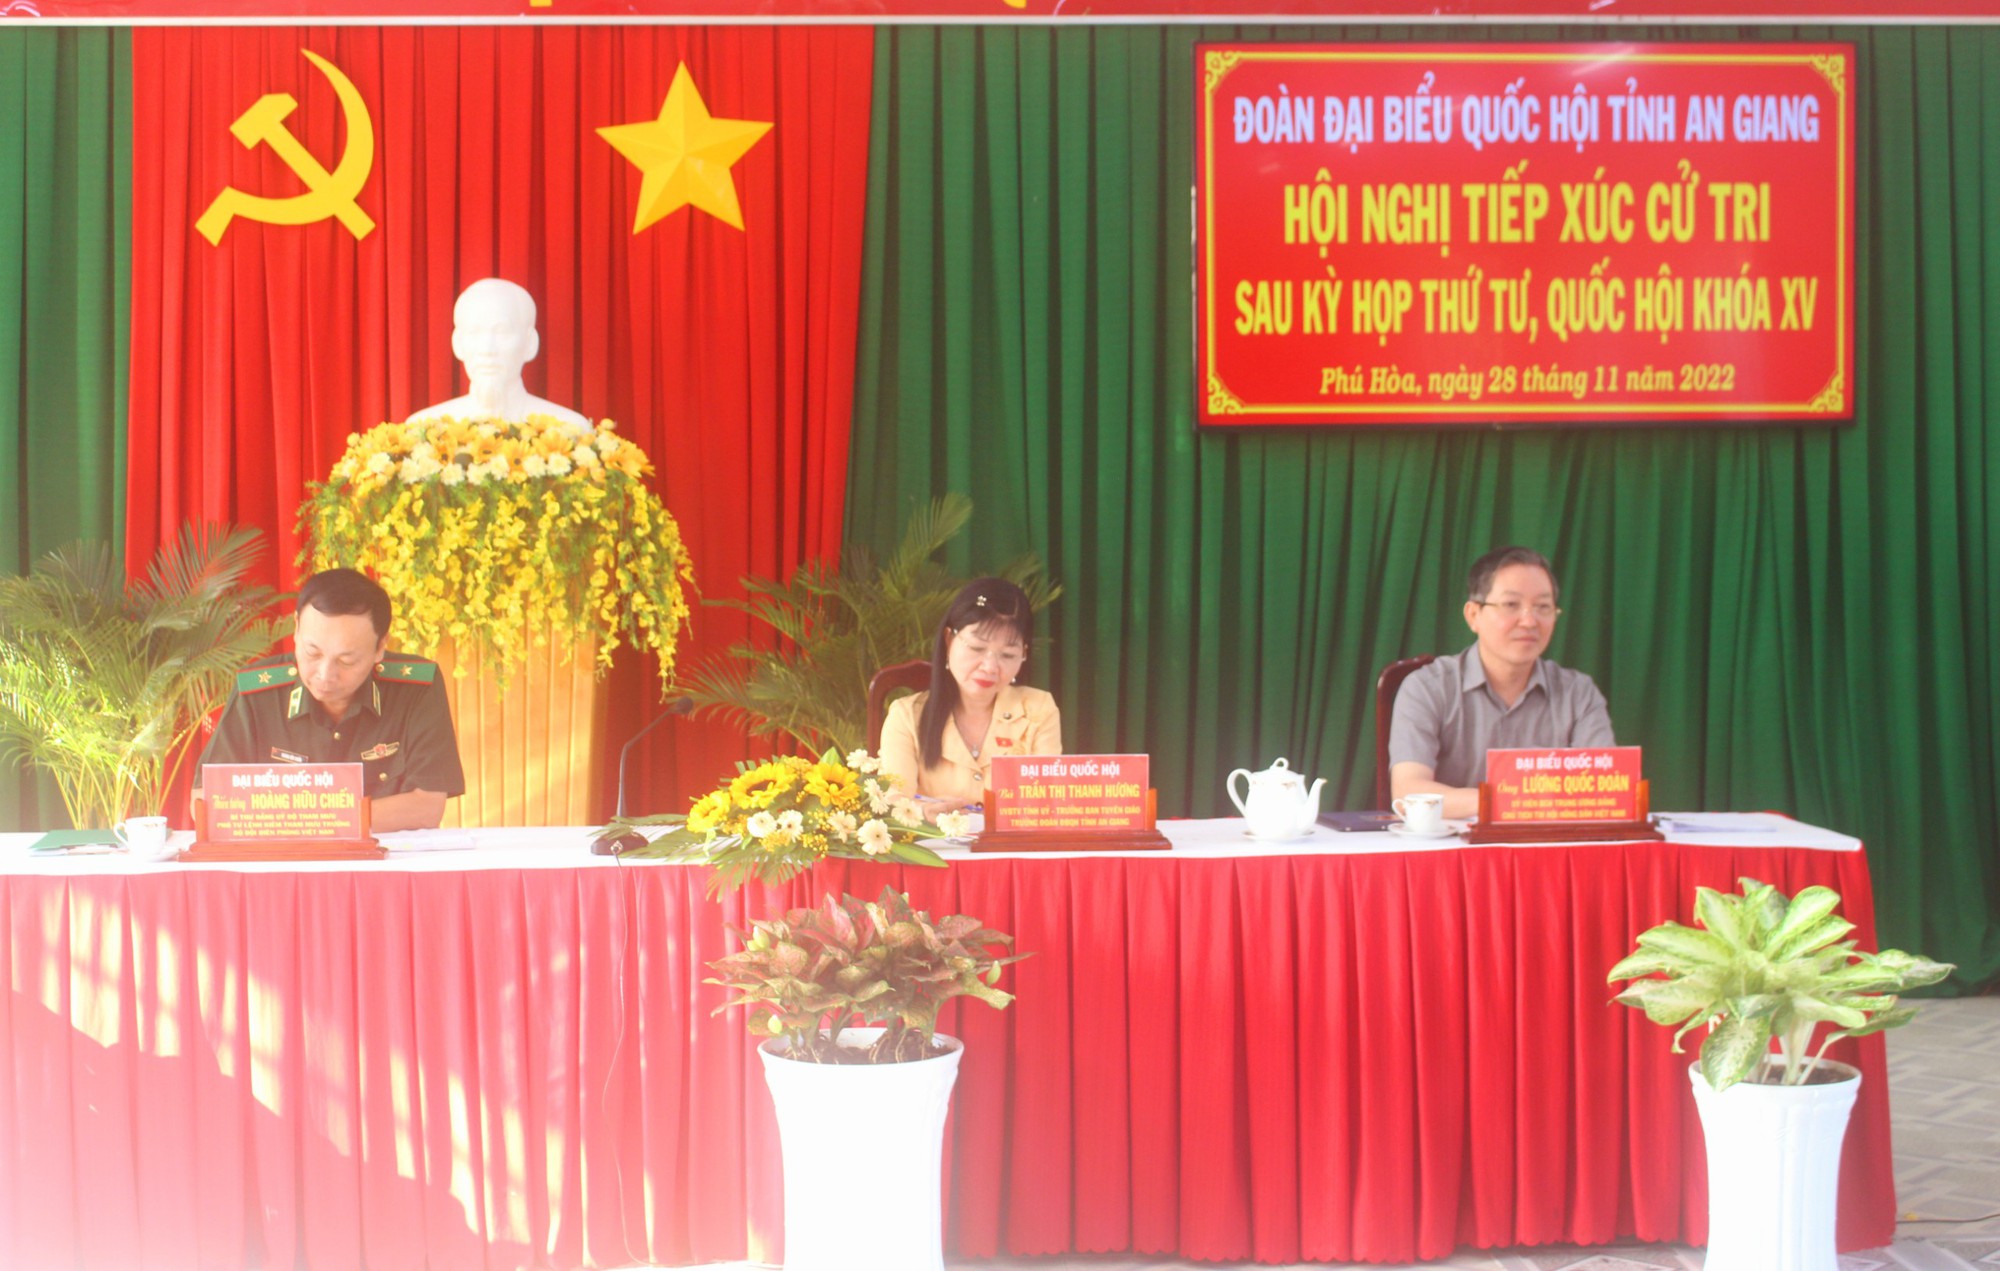 Chủ tịch Ban Chấp hành Trung ương Hội Nông dân Việt Nam Lương Quốc Đoàn tiếp xúc cử tri tại An Giang- Ảnh 1.